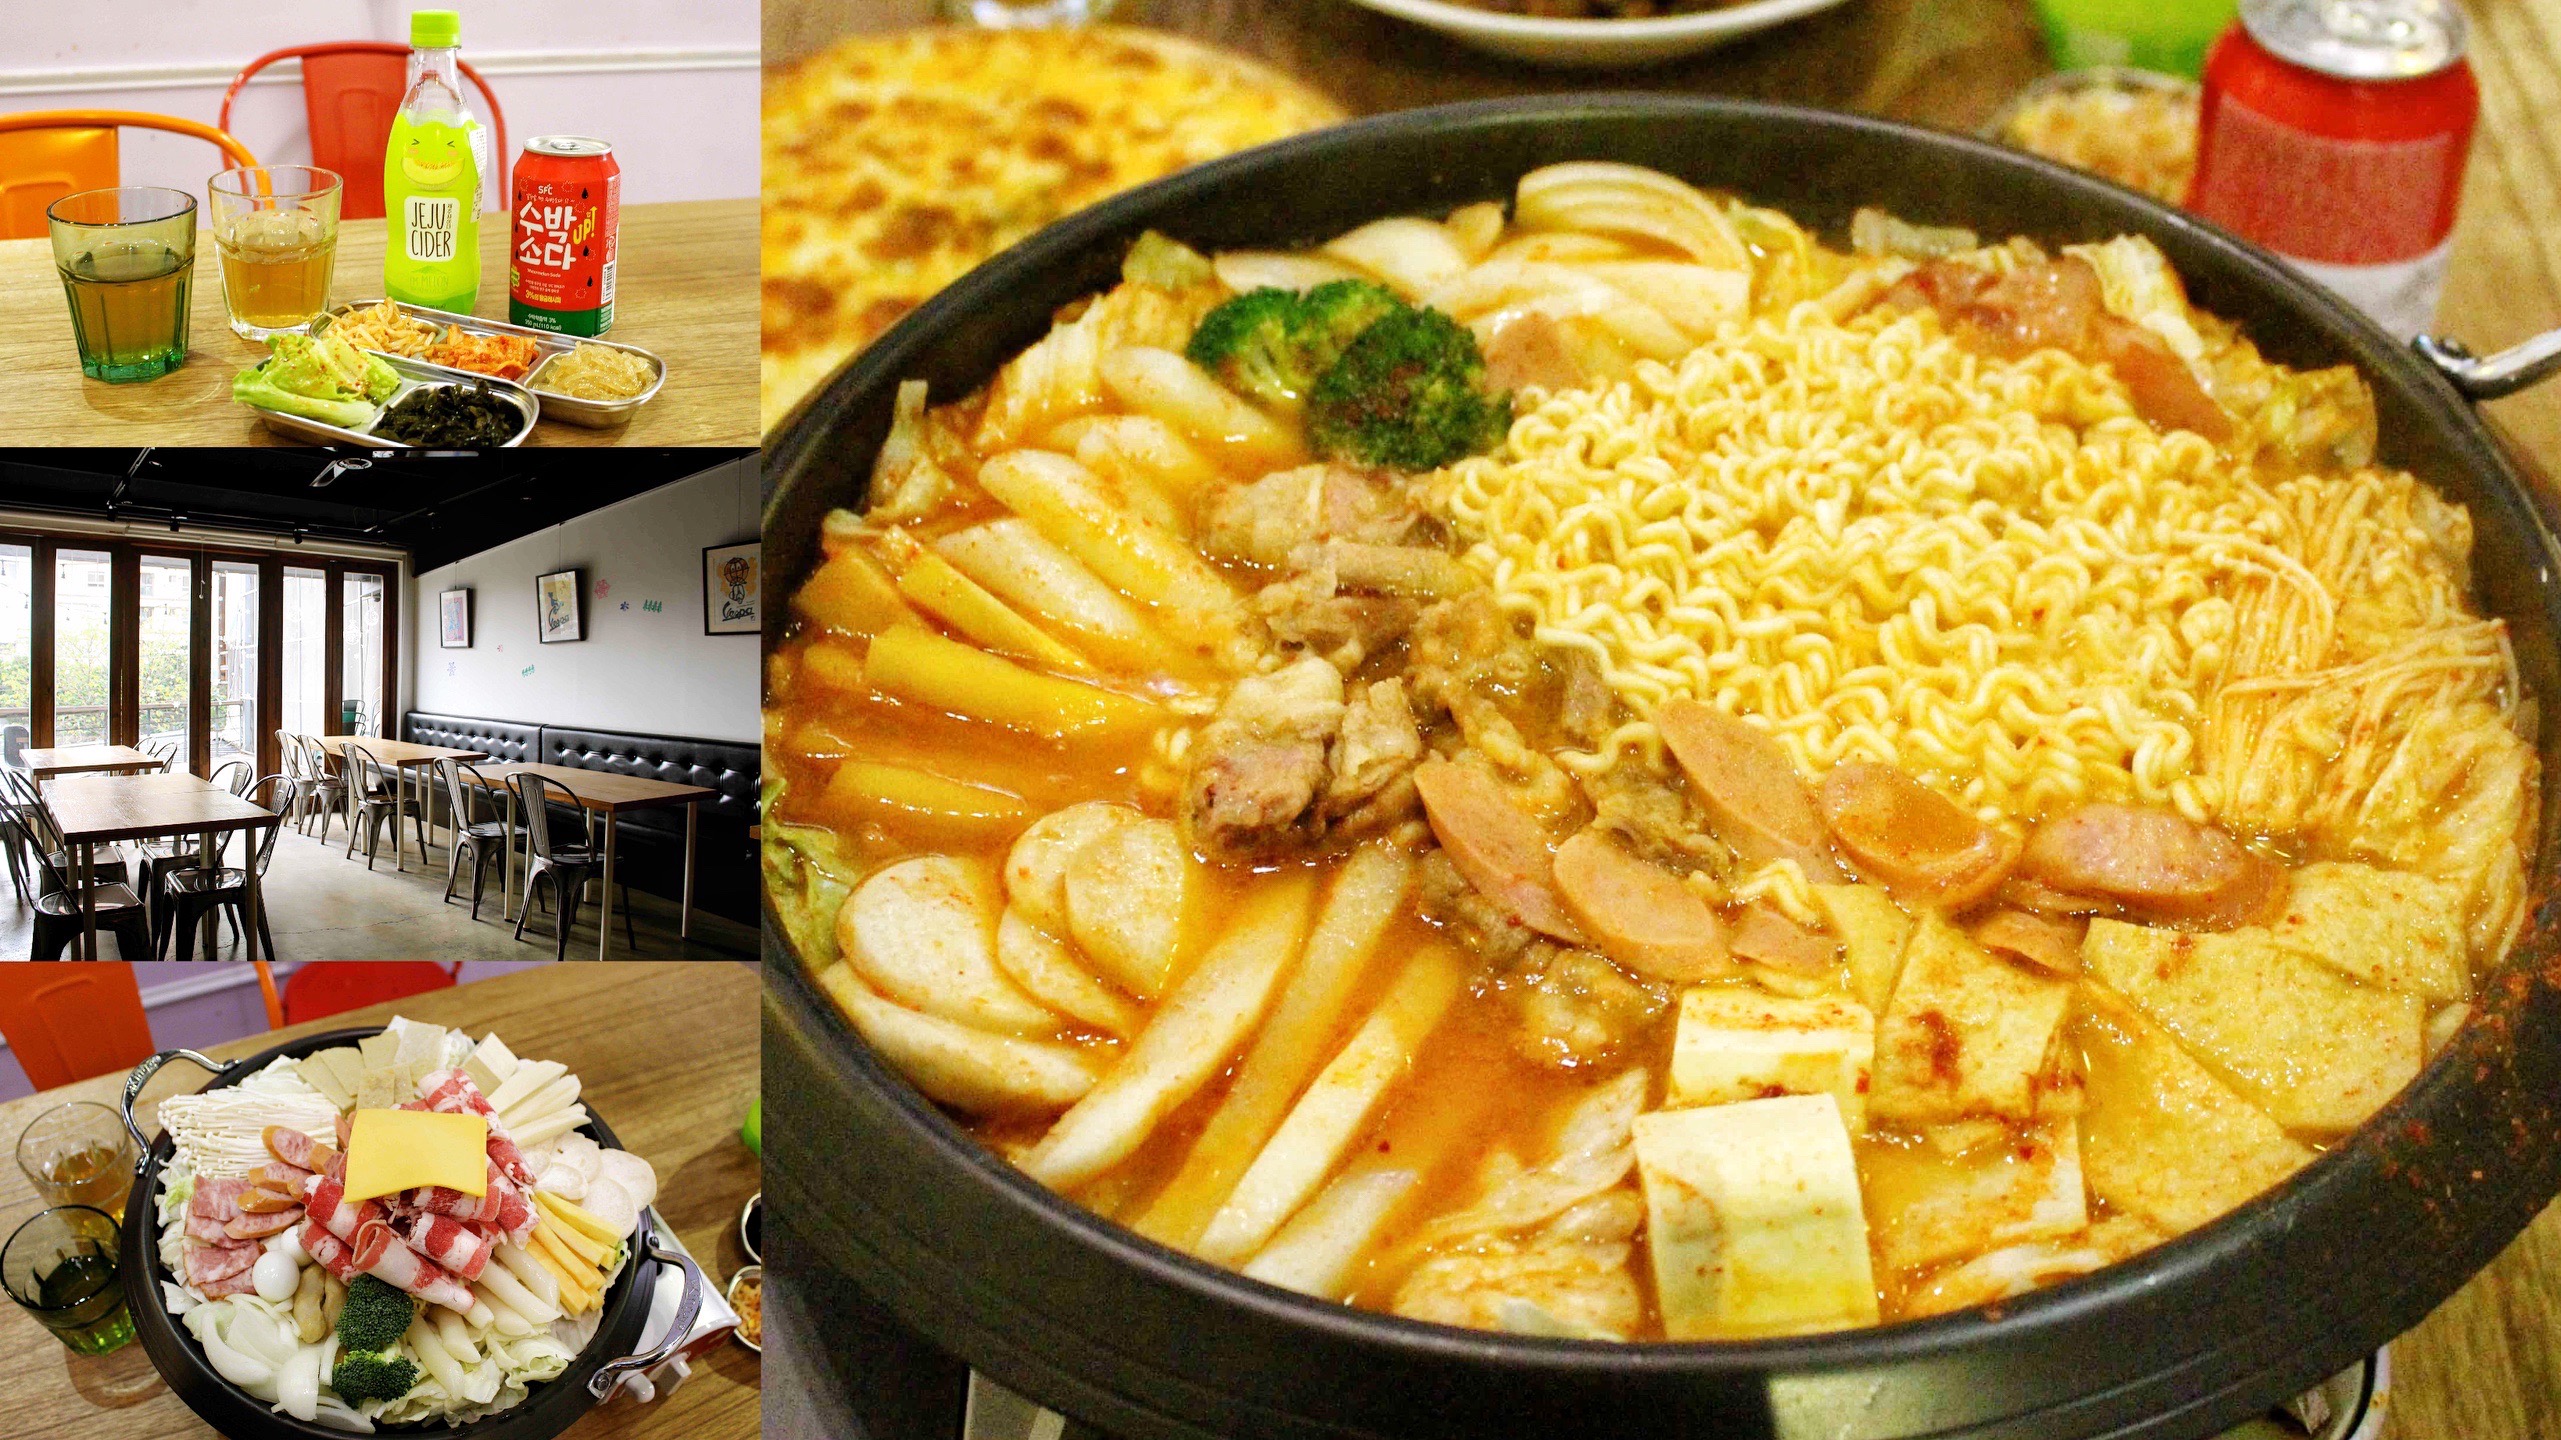 SU KITCHEN,炸醬麵,部隊鍋,韓式料理,韓式部隊鍋,桃園車站美食,